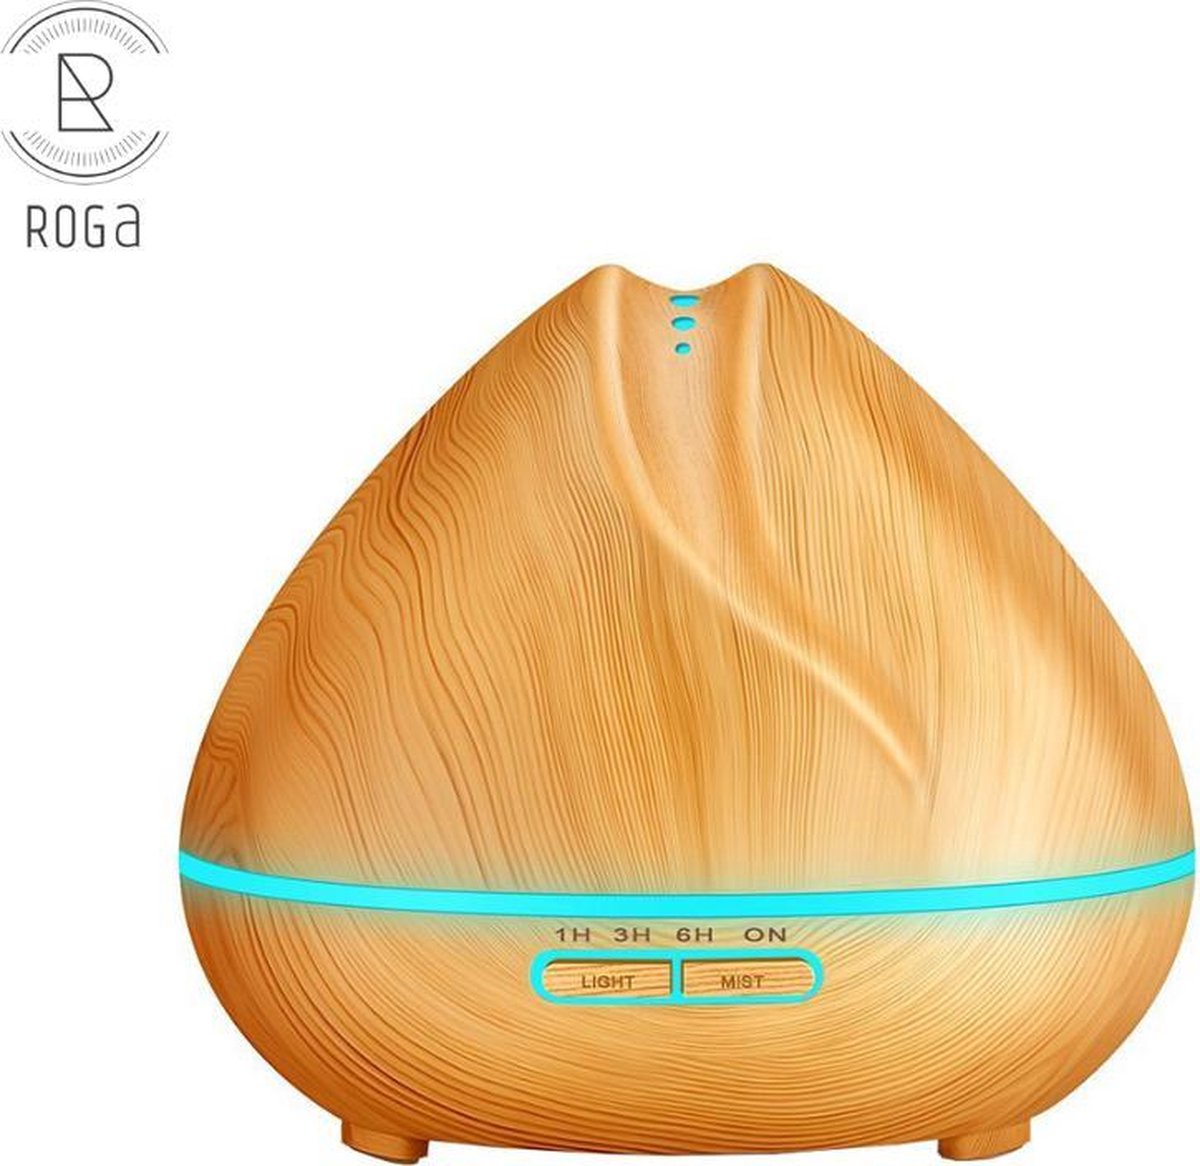 Roga Lotus Aroma diffuser - Aroma diffuser - Aroma therapie - Luchtbevochtiger - Geurverspreider - Luchtverfrisser - Vernevelaar - Licht hout